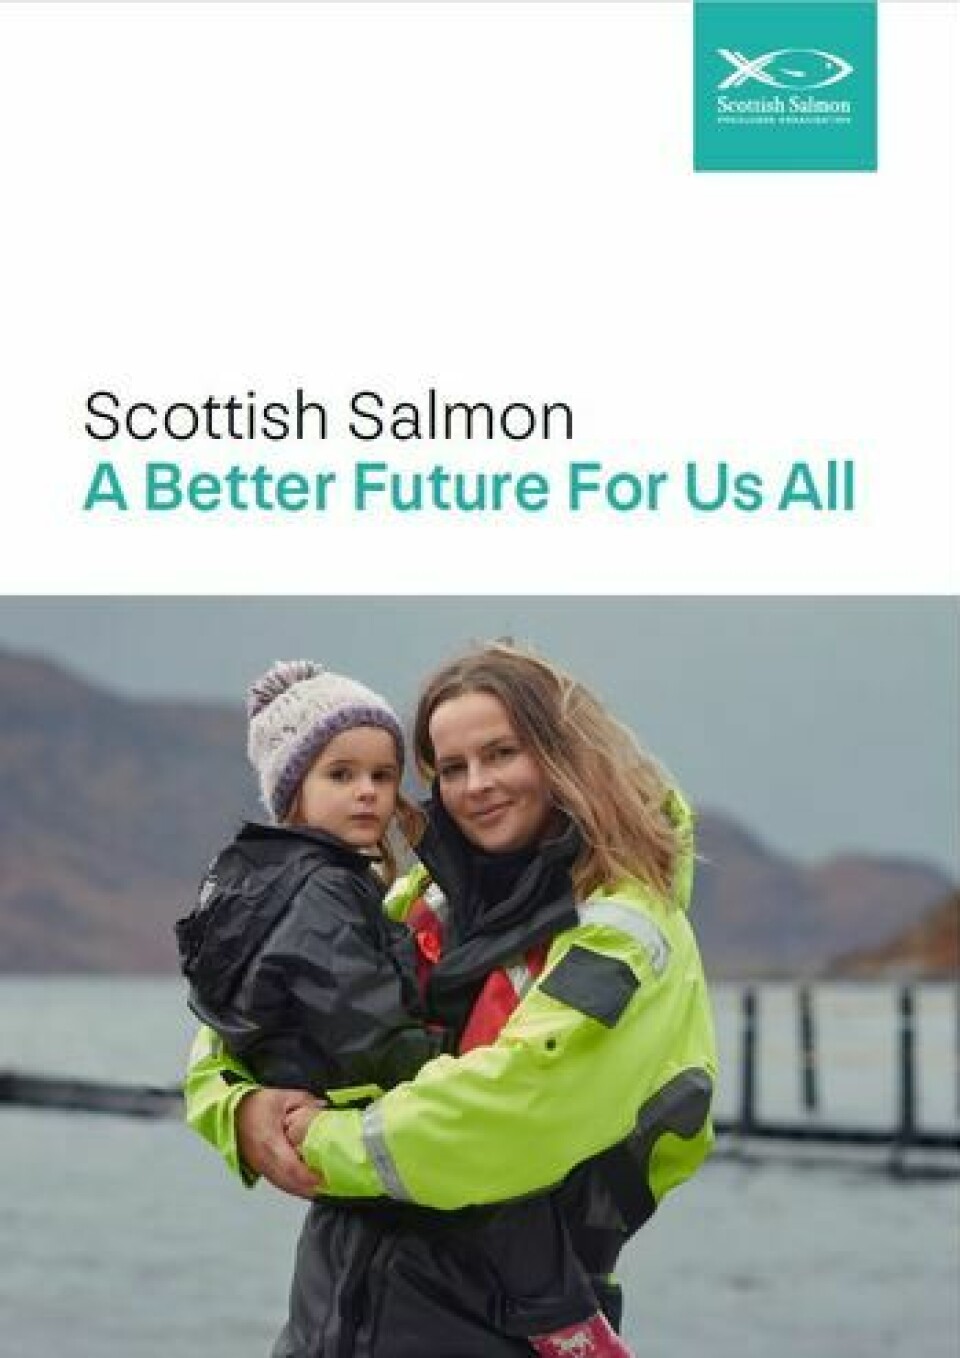 Portada documento publicado por la Asociación de Productores de Salmón de Escocia.